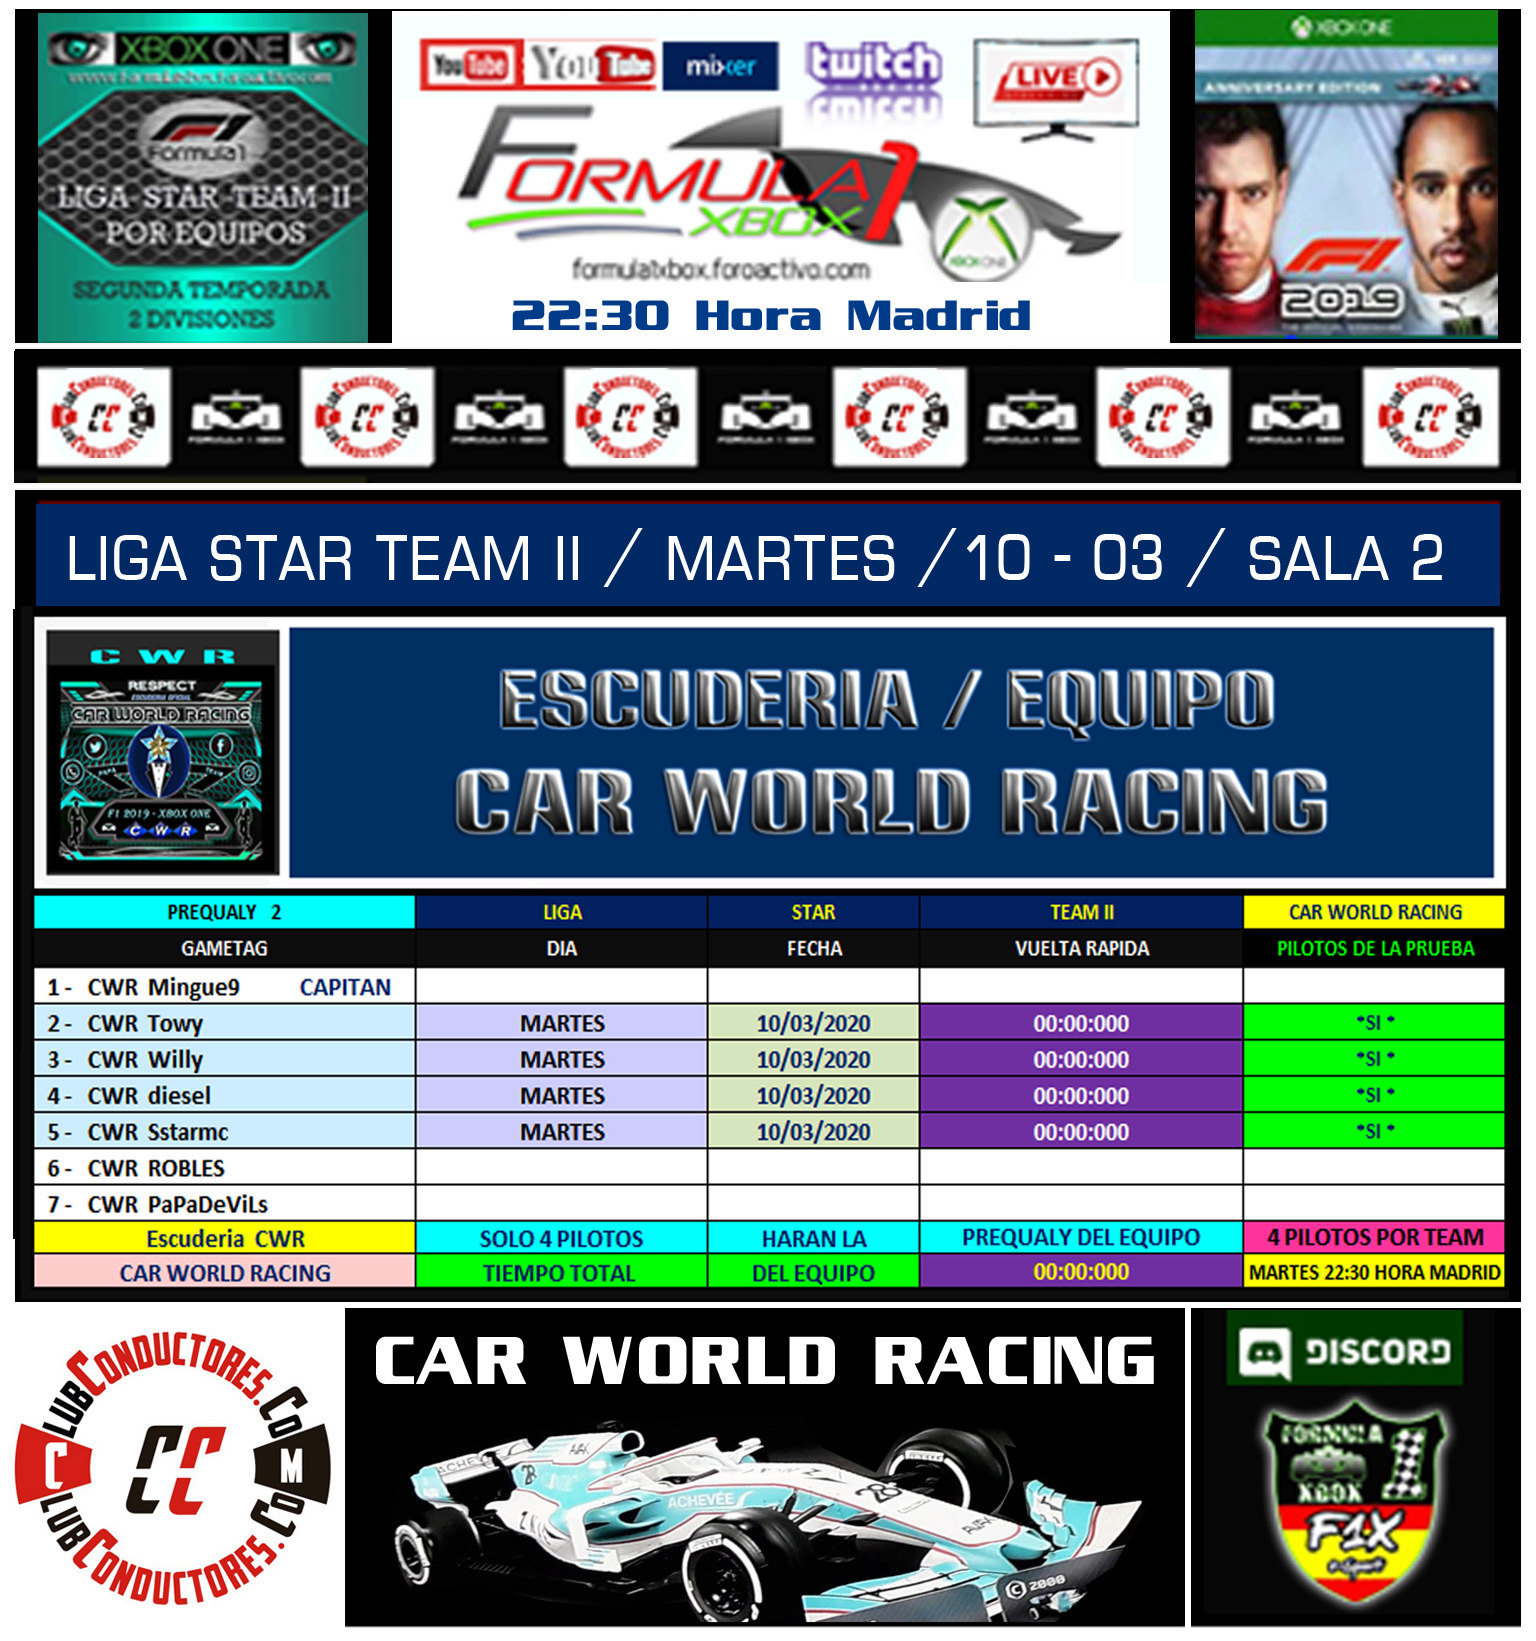 F1 2019 - XBOX ONE / LIGA STAR TEAM II - F1X / ESCUDERIA CAR WORLD RACING. Car_wo14